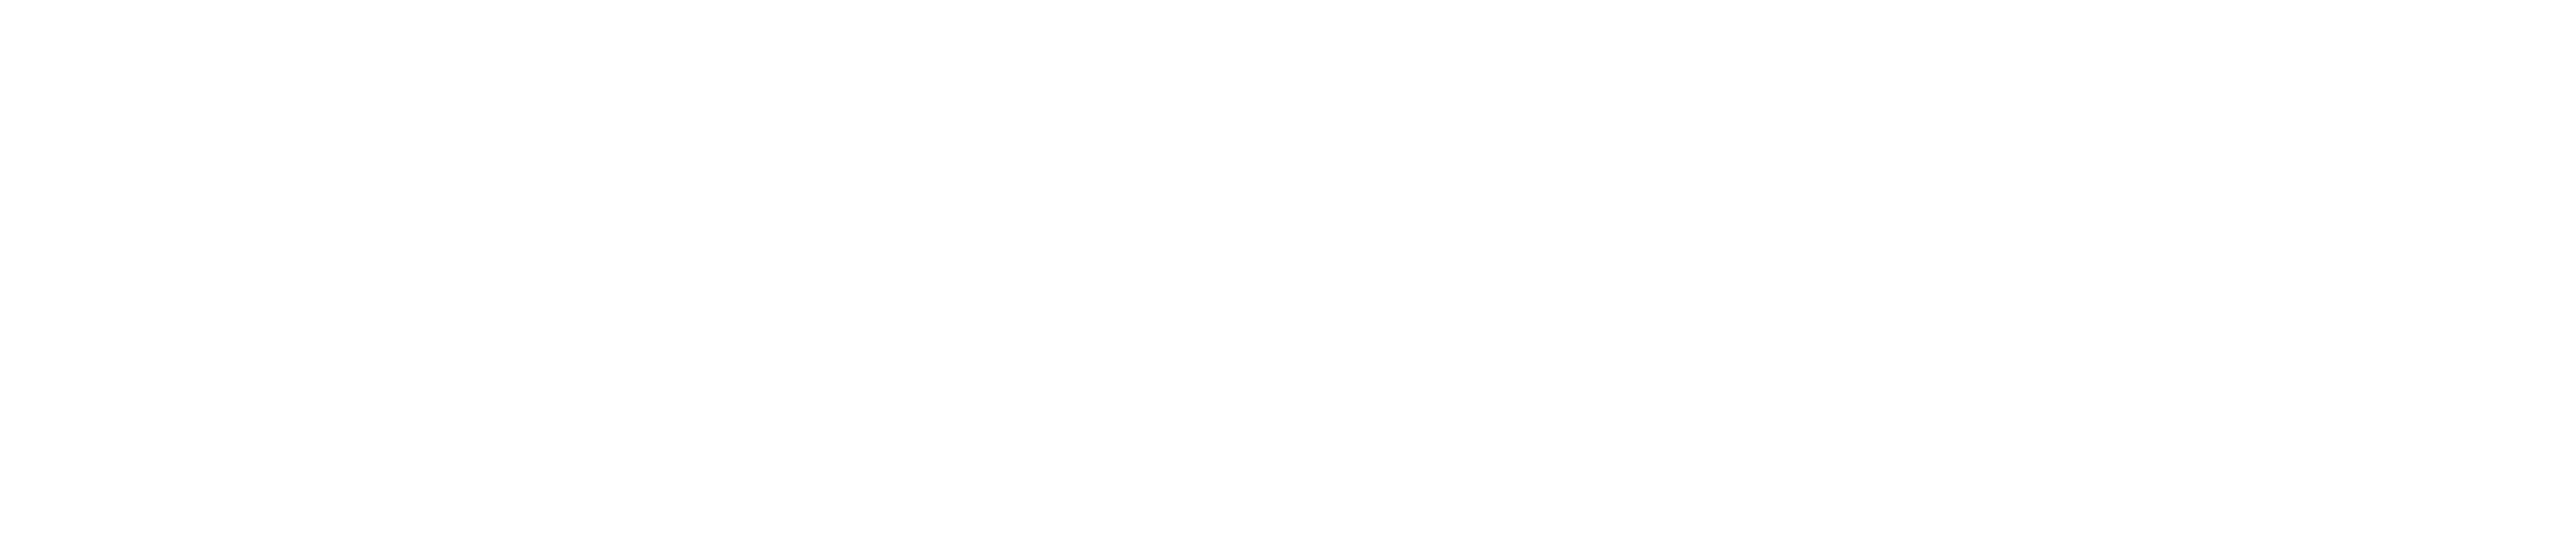 Closer Still Logo